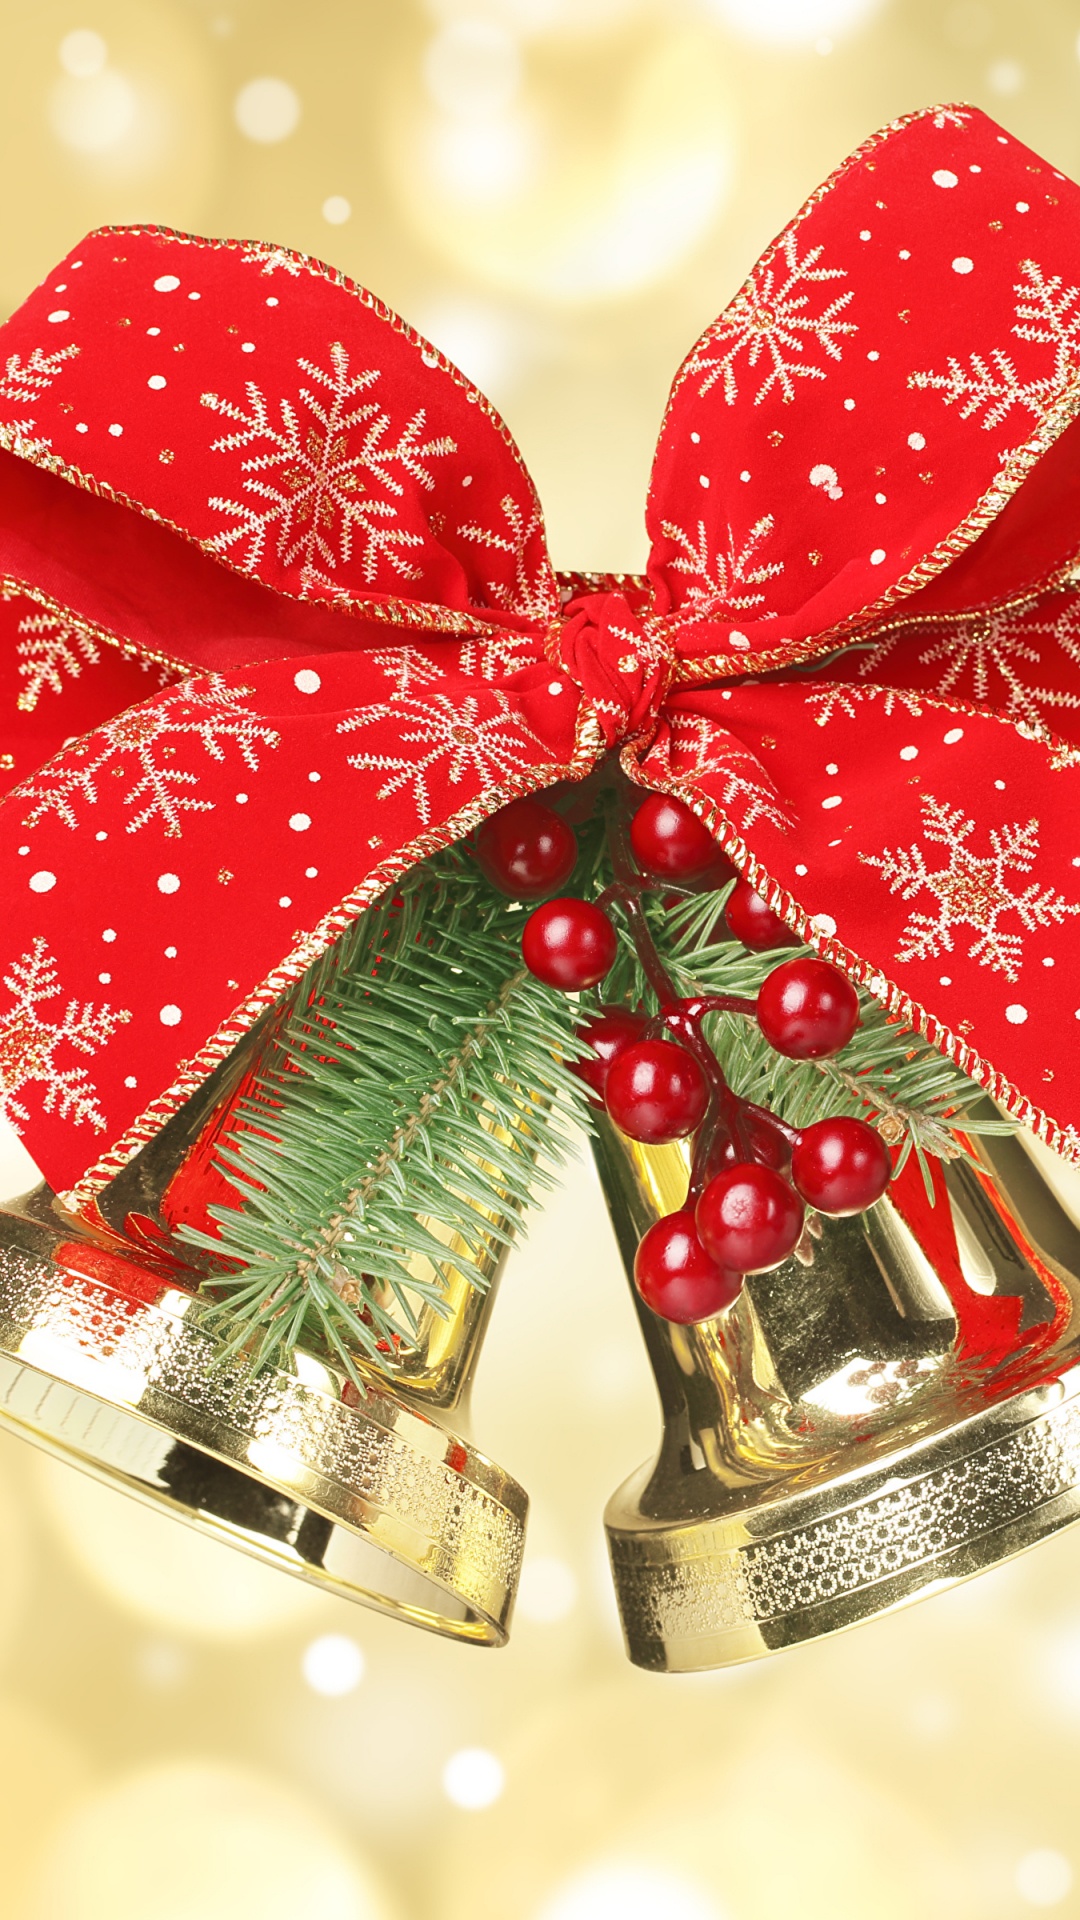 Weihnachten, Neujahr, Christmas Ornament, Weihnachtsdekoration, Weihnachtsbaum. Wallpaper in 1080x1920 Resolution